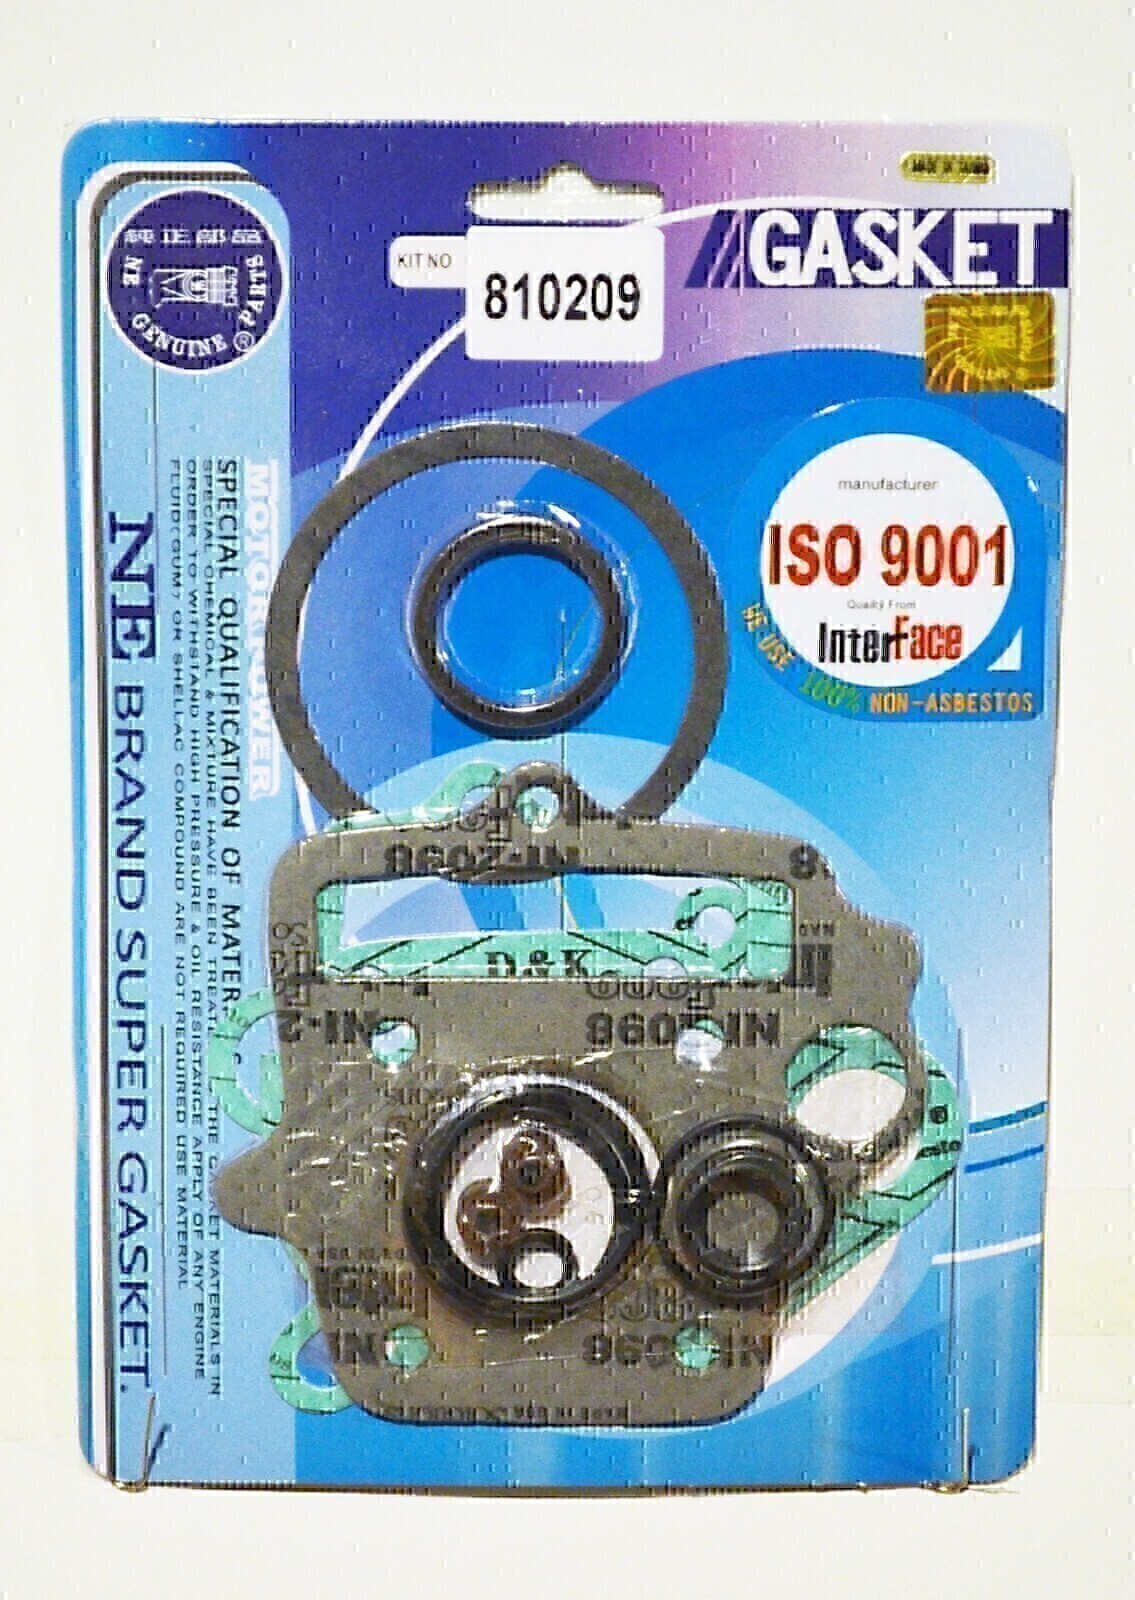 TOP END GASKET KIT FOR HONDA ZR50 1988 - 1999 XR50 2000 - 2003 CRF50F 2004 - 2015